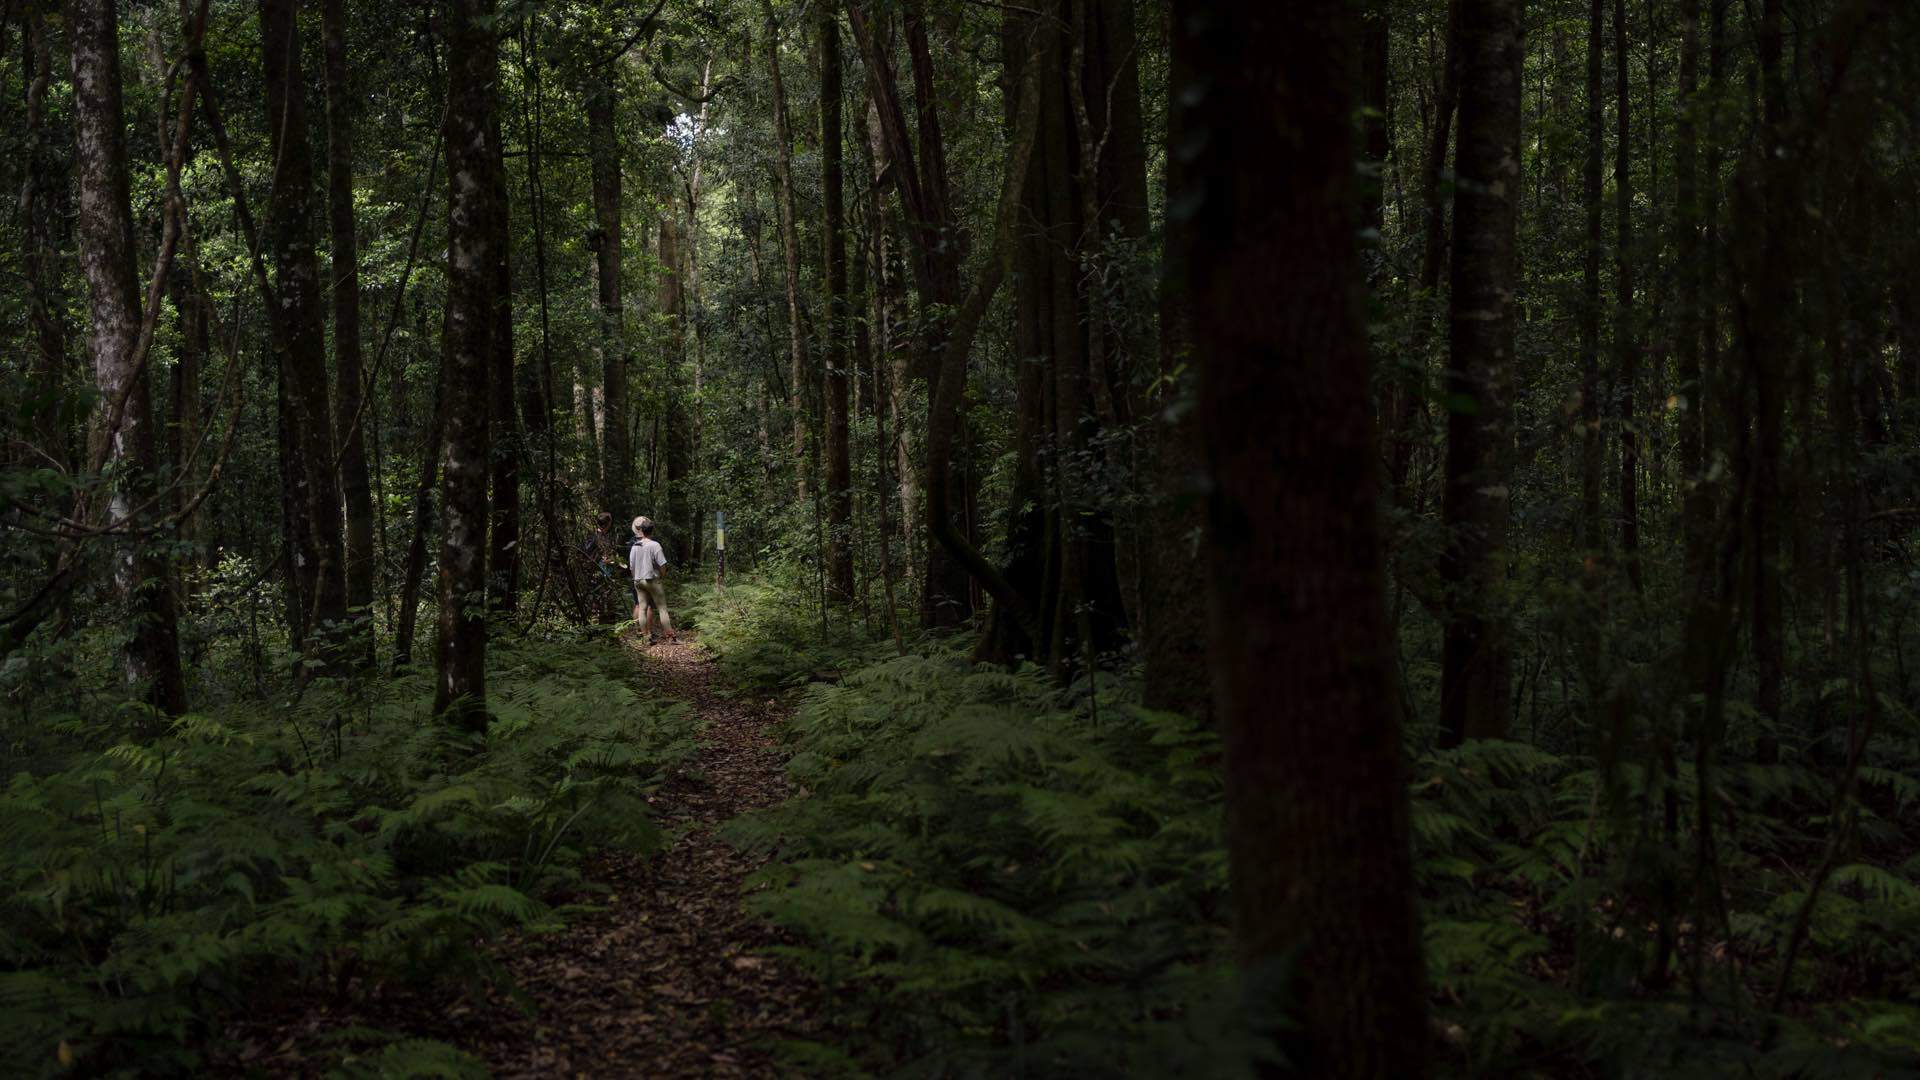 Two people bushwalking through dense forest